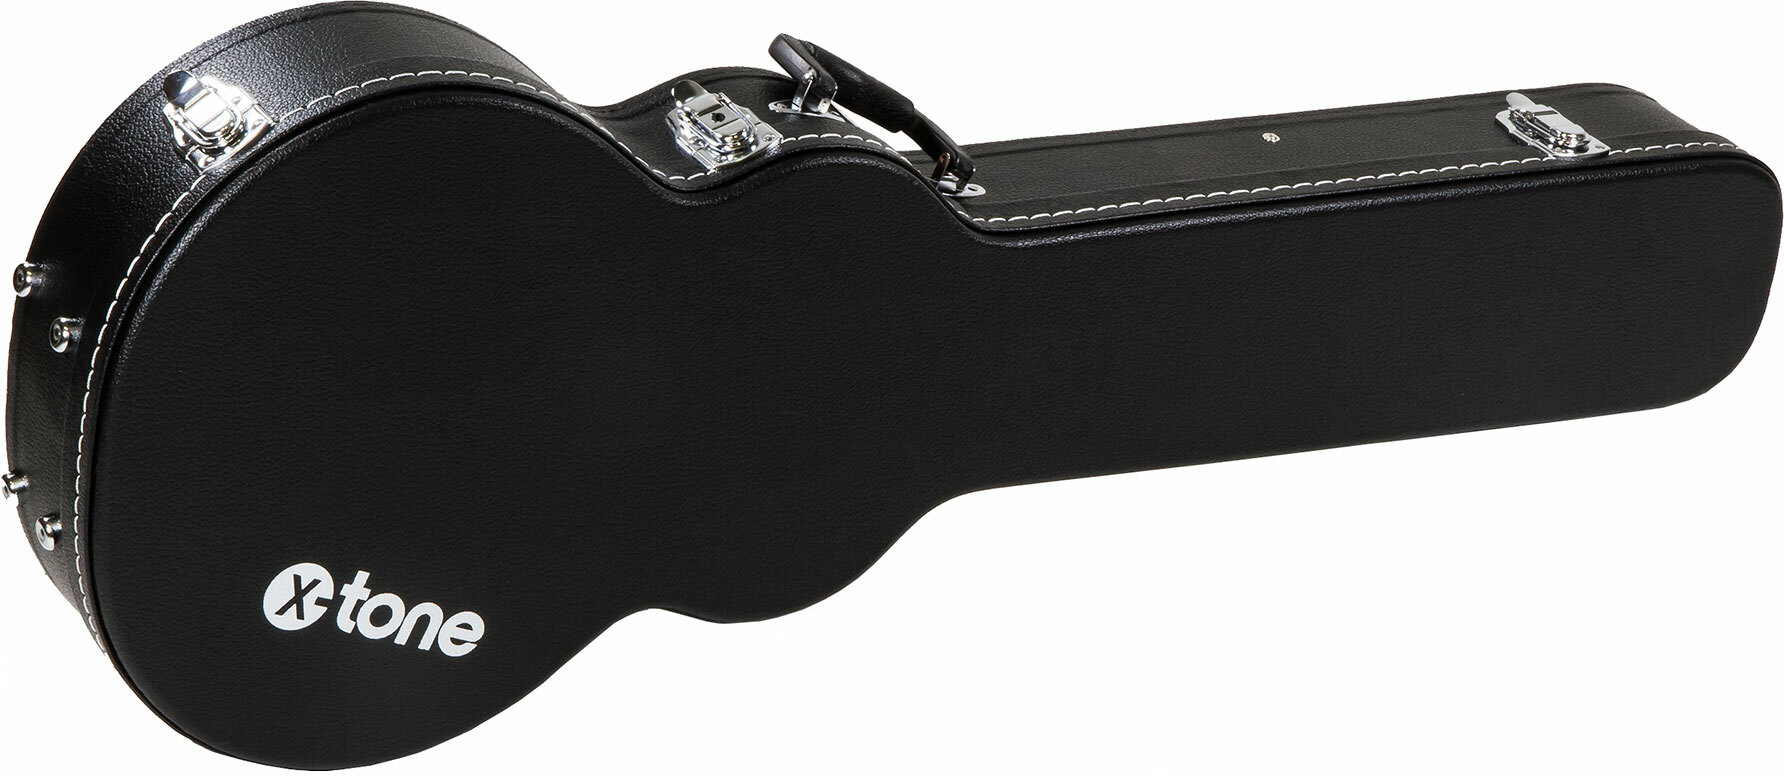 X-tone 1502 Standard Electrique Les Paul En Forme Black - Electric guitar case - Main picture